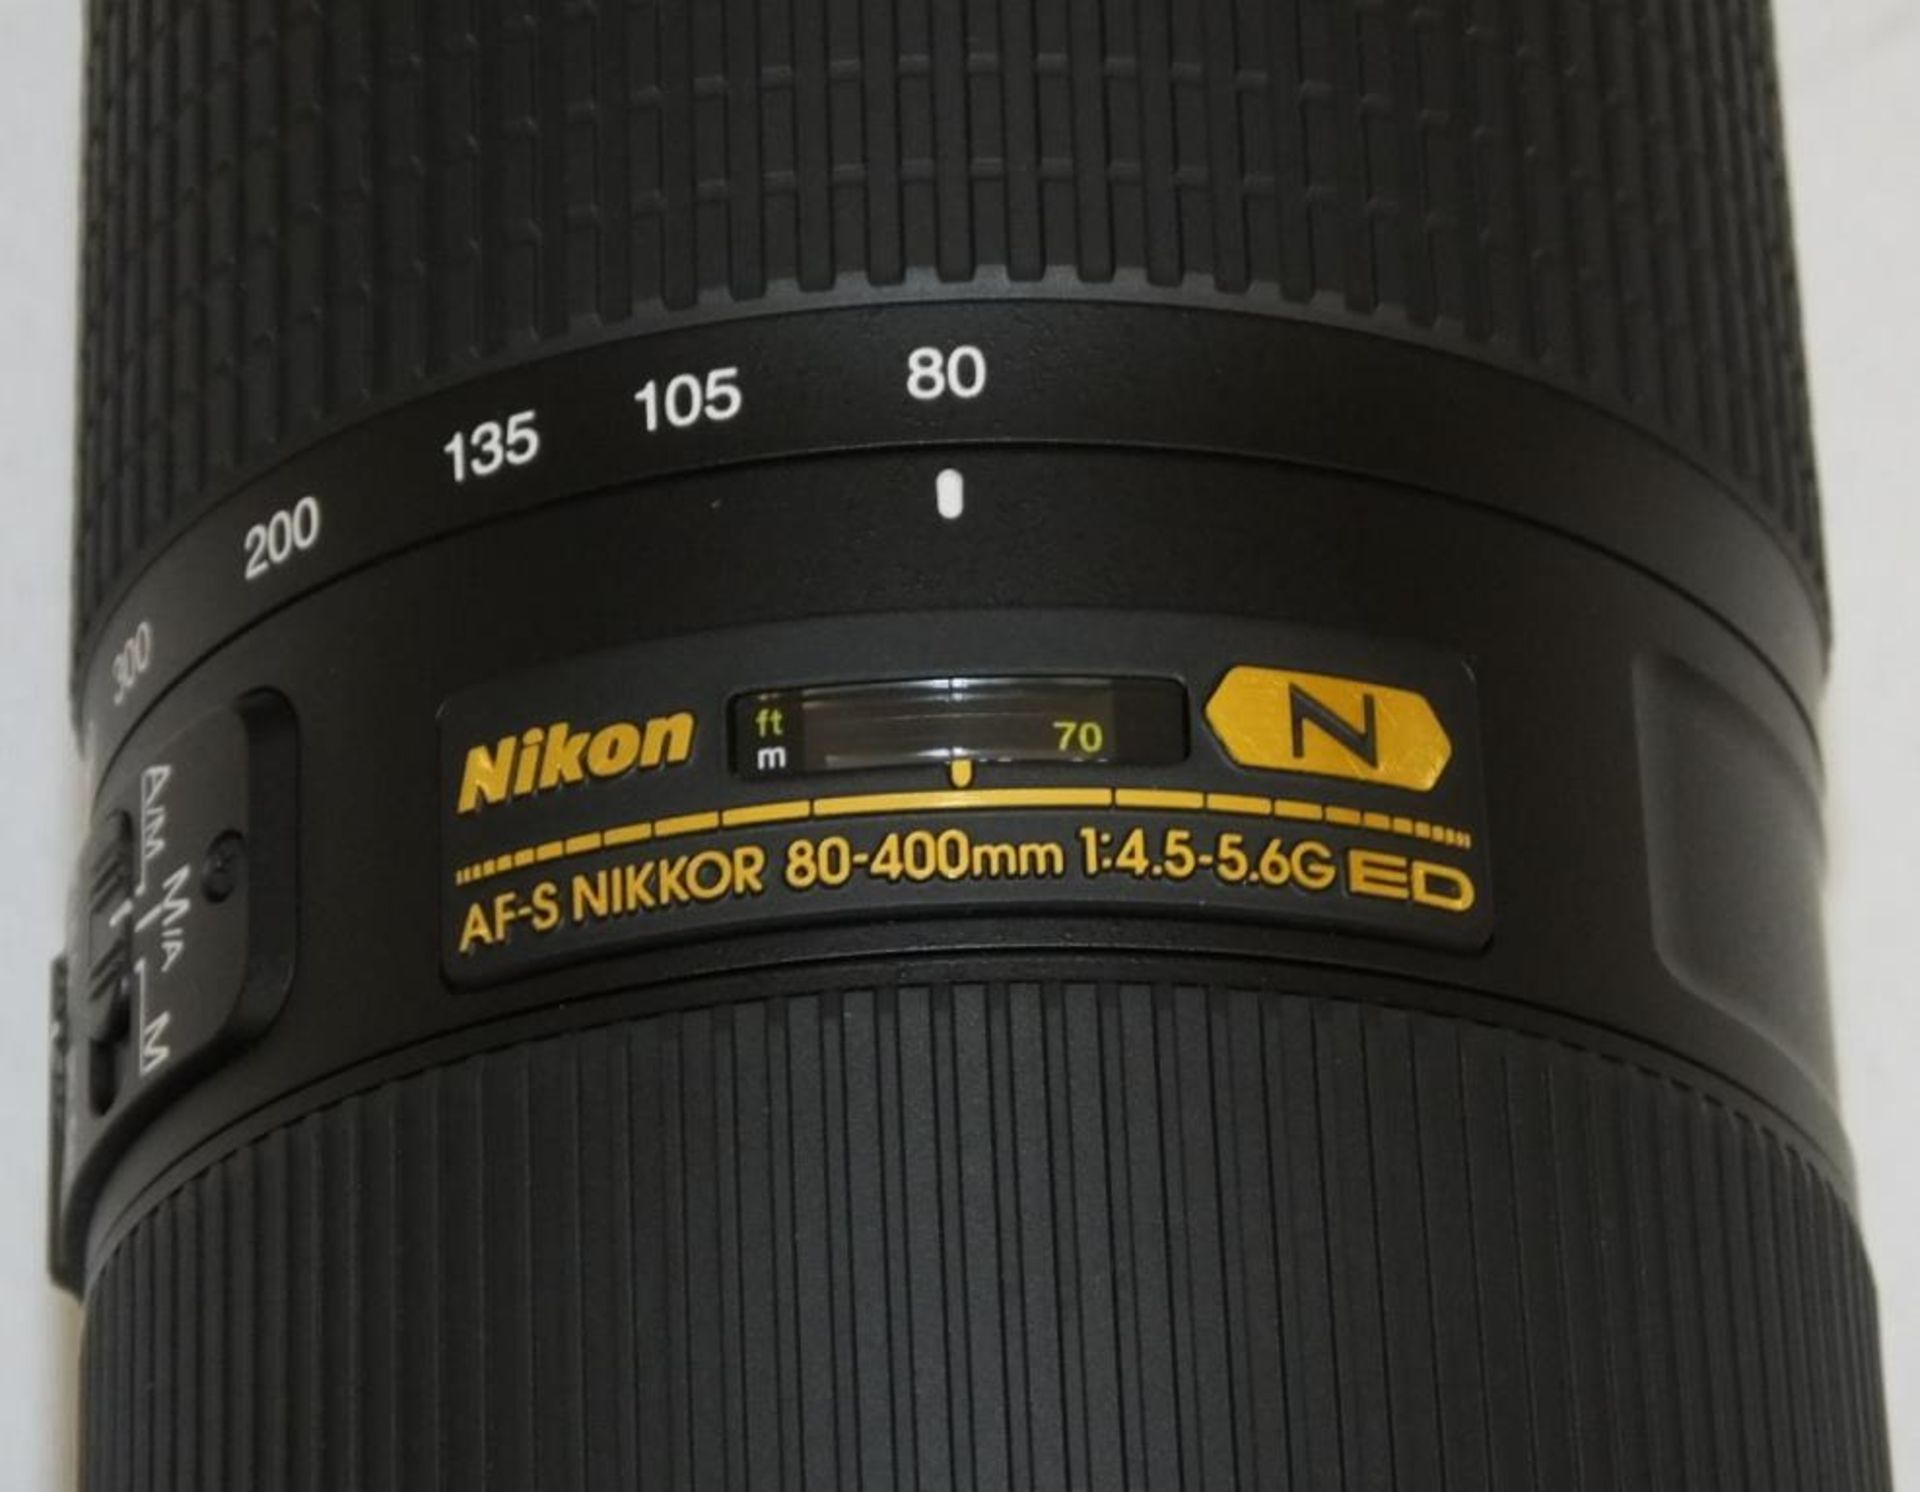 Nikon Nikkor Lens - AF-S Nikkor 80-400mm f/4.5-5.6G ED VR with Nikon HB-65 Lens Hood & CL-M2 case - Image 2 of 5